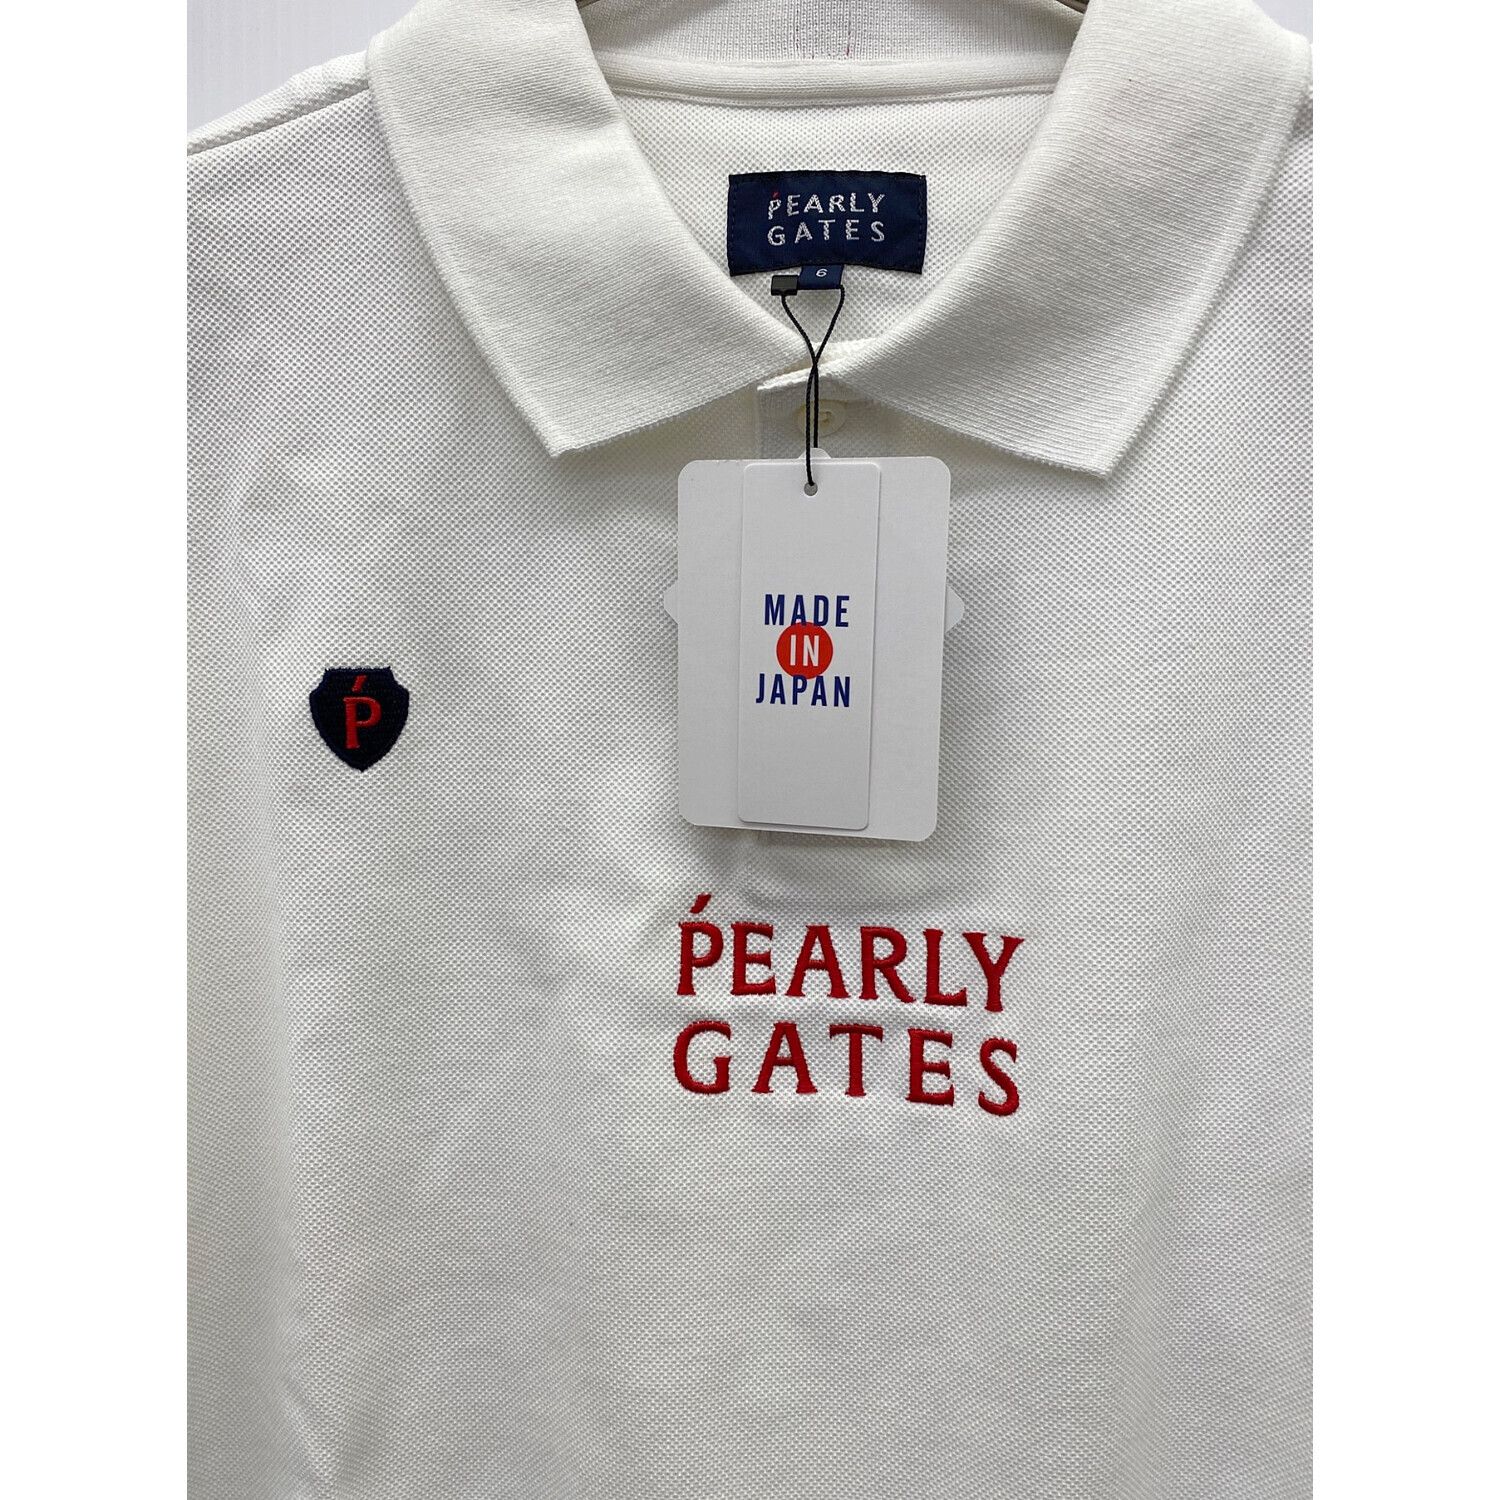 PEARLY GATES (パーリーゲイツ) ゴルフウェア(トップス) メンズ SIZE 6 